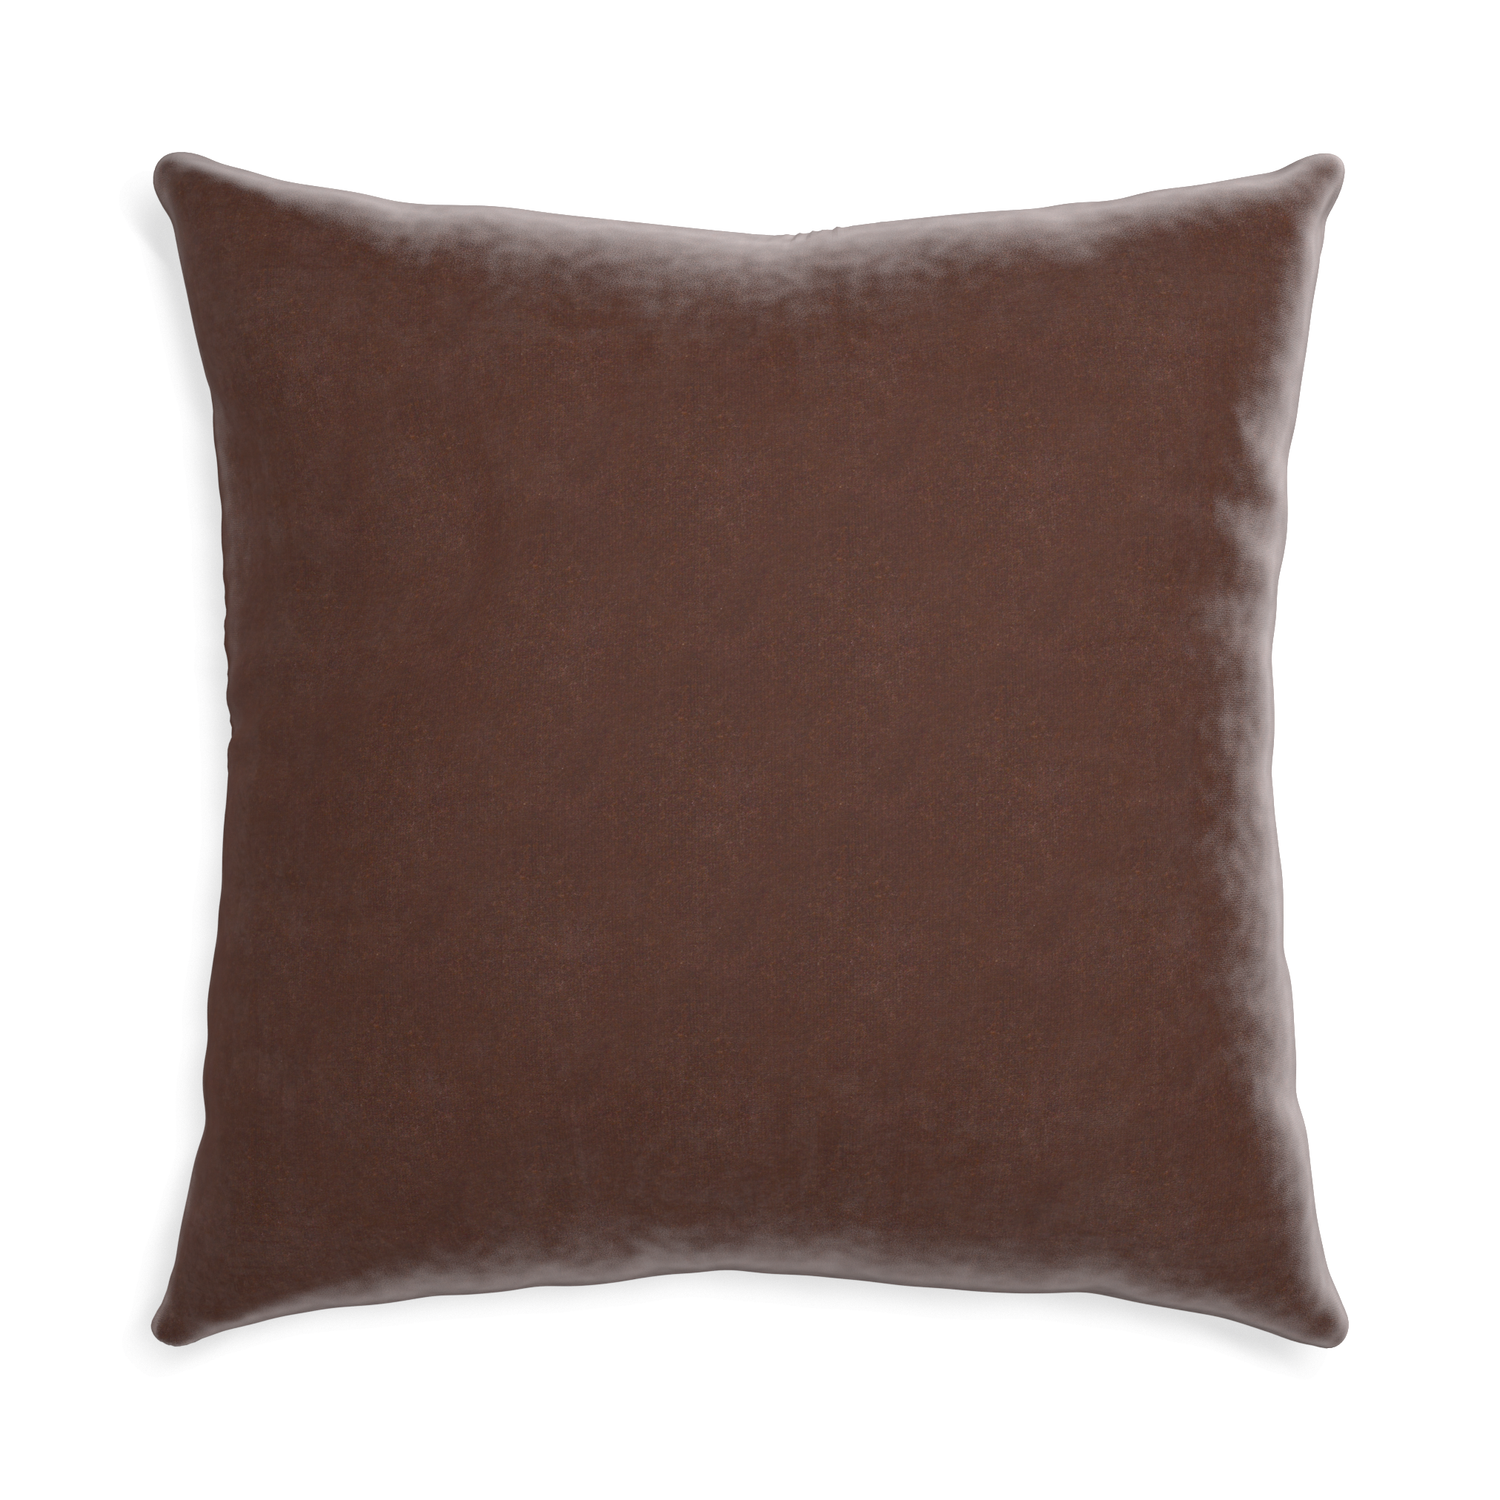 Euro-sham walnut velvet custom pillow with none on white background